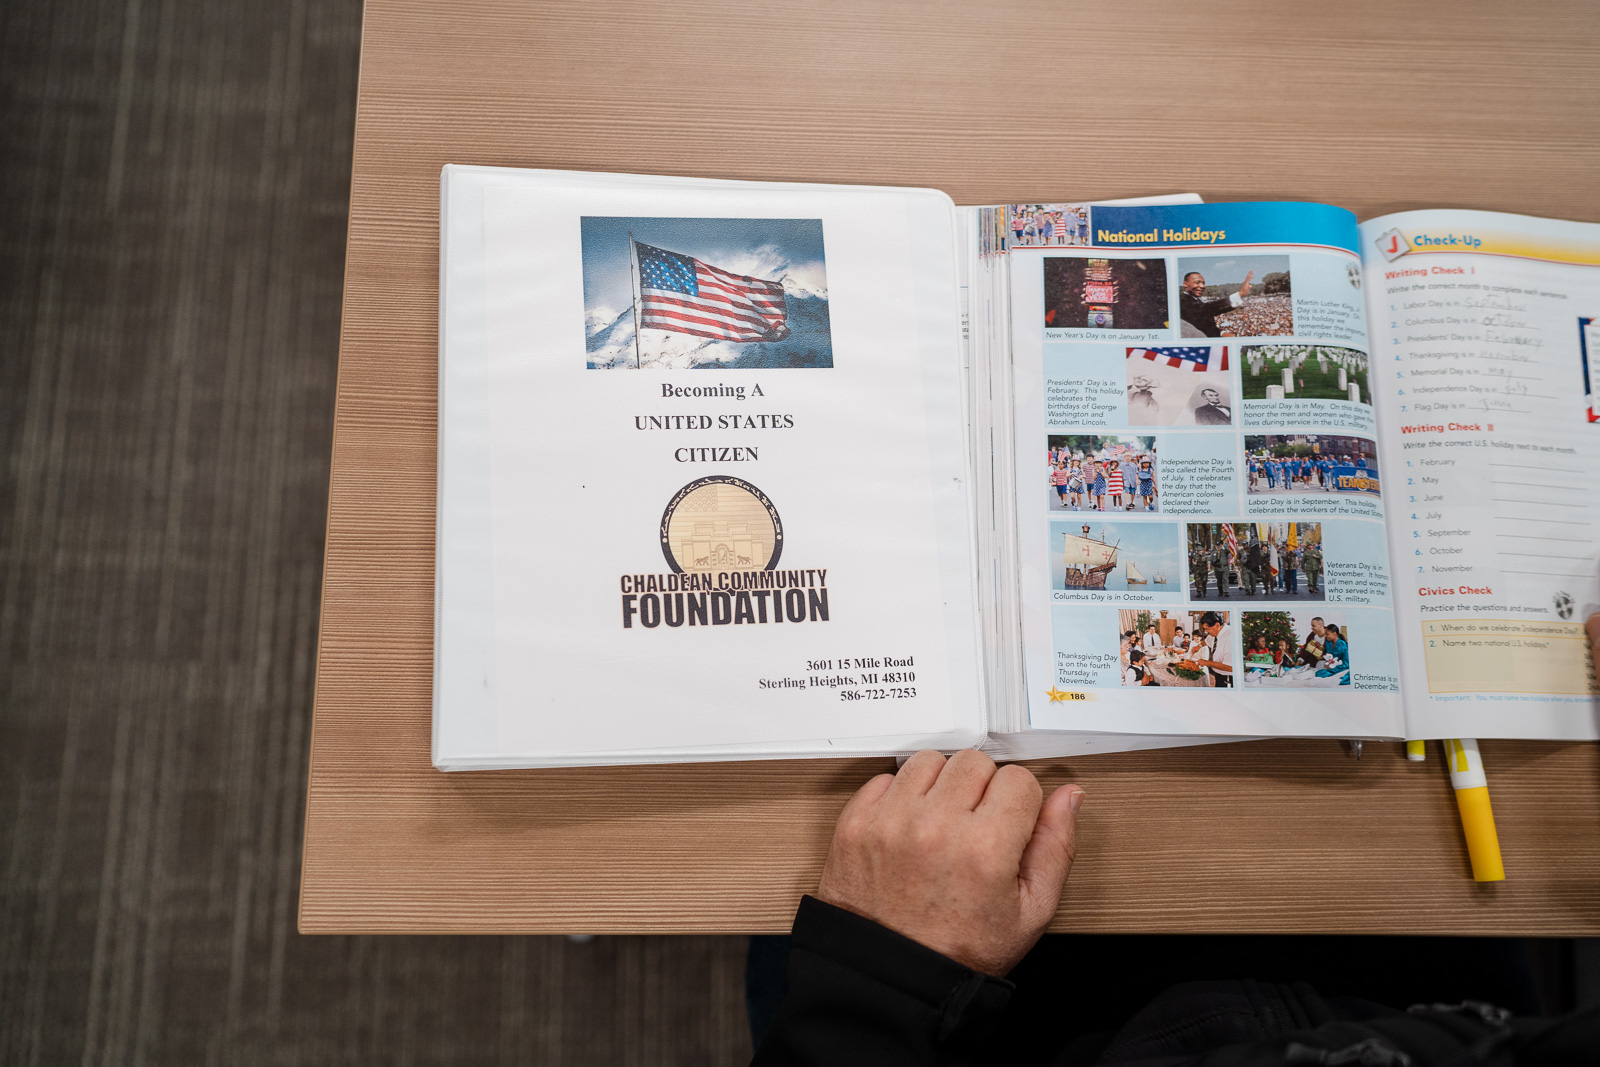 Chaldean Community Foundation workbook on citizenship